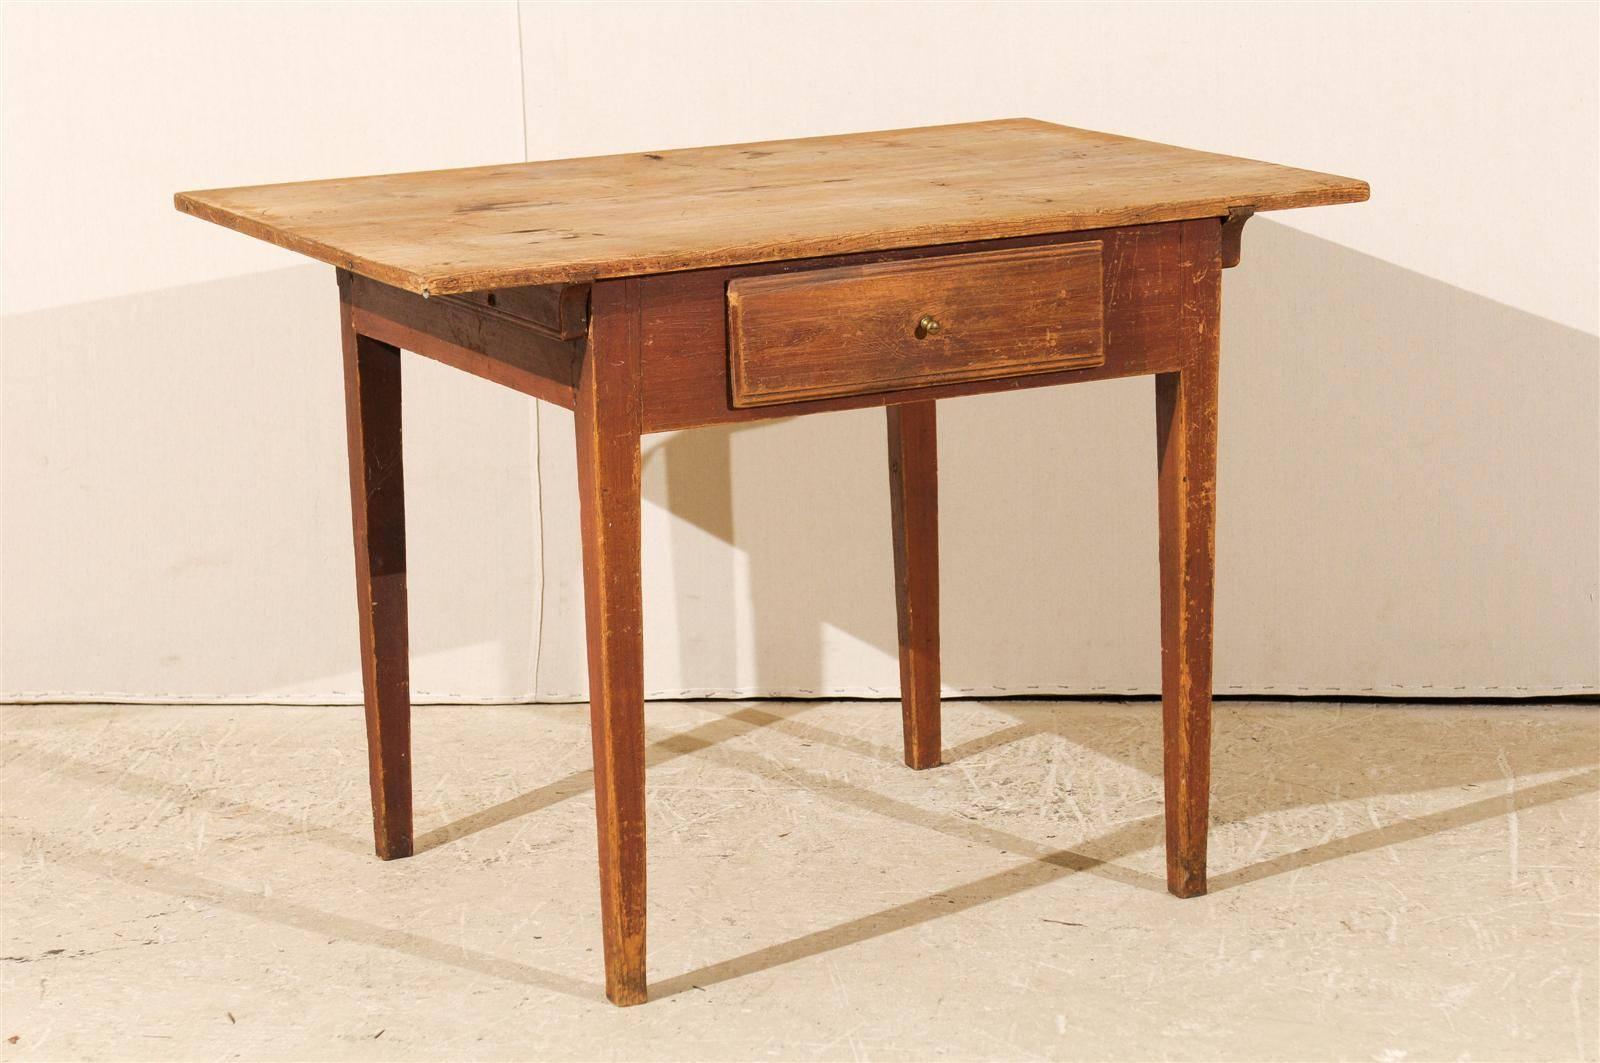 Une table suédoise à un seul tiroir datant du milieu du 19e siècle. Cette table d'appoint présente une finition originale avec une belle patine d'usage. Cette table a une structure simple mais élégante, avec des pieds légèrement effilés. Cette pièce